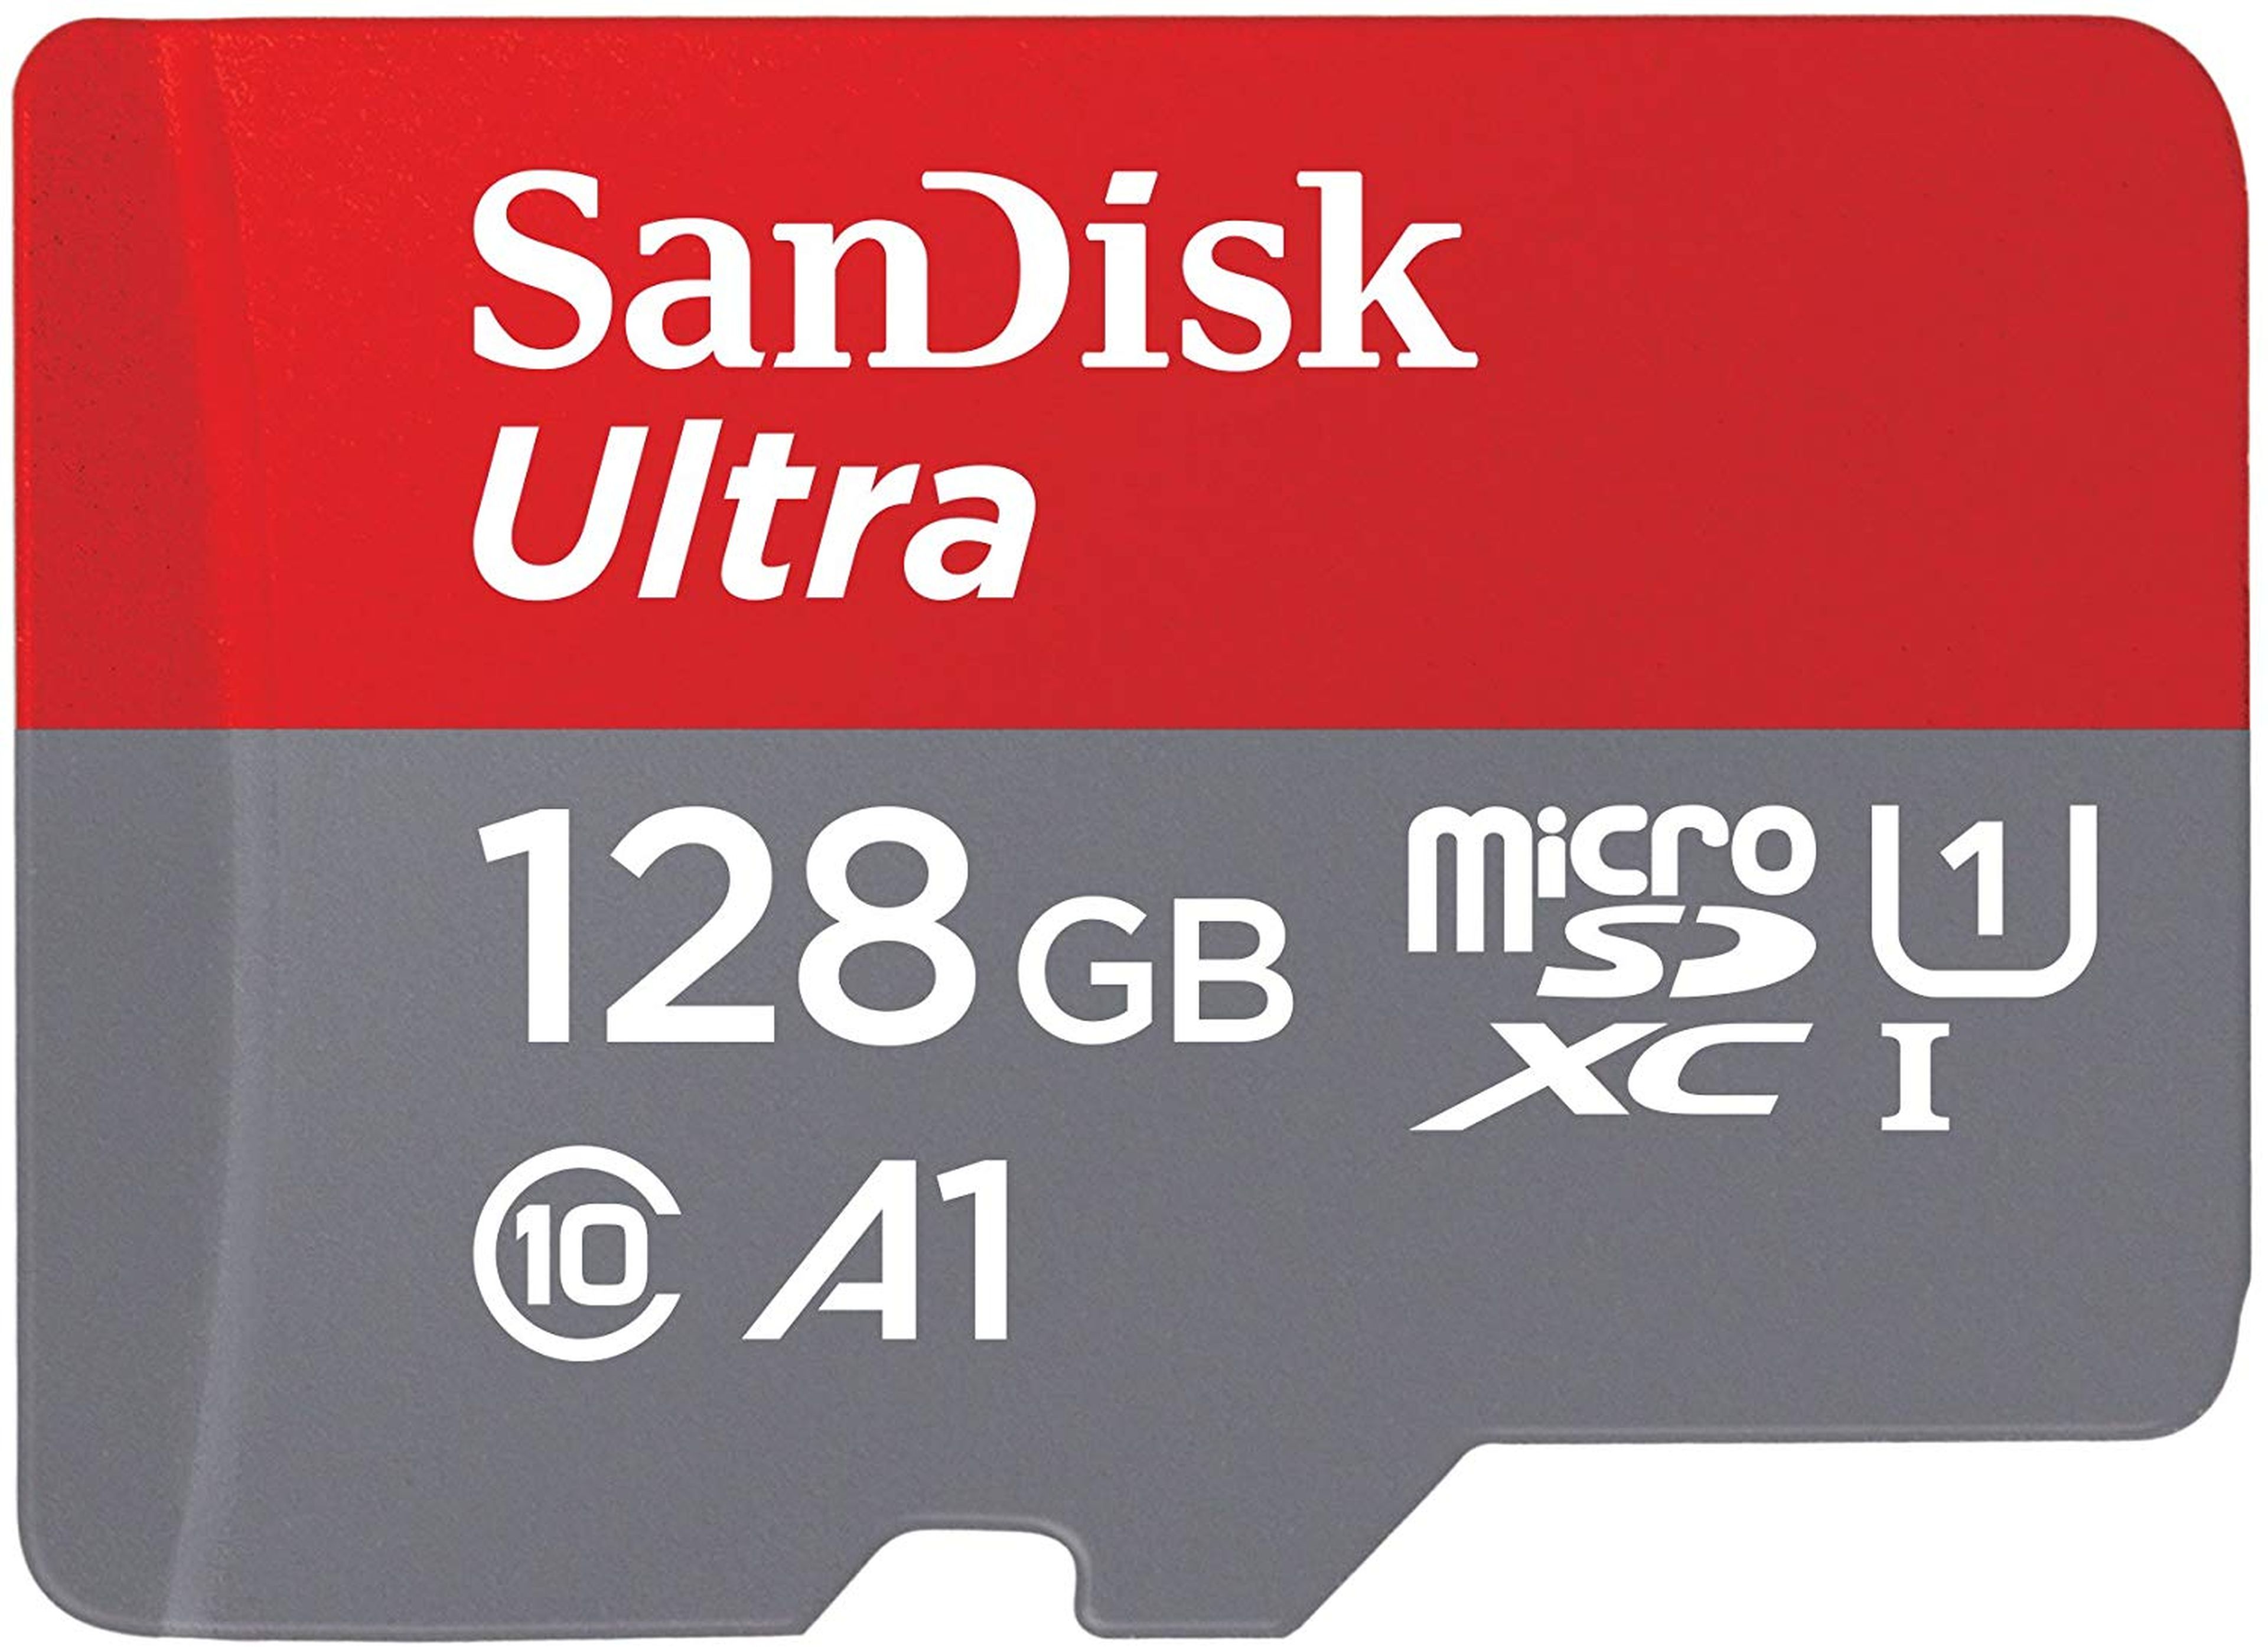 Tarjeta de memoria SanDisk de 128 GB.